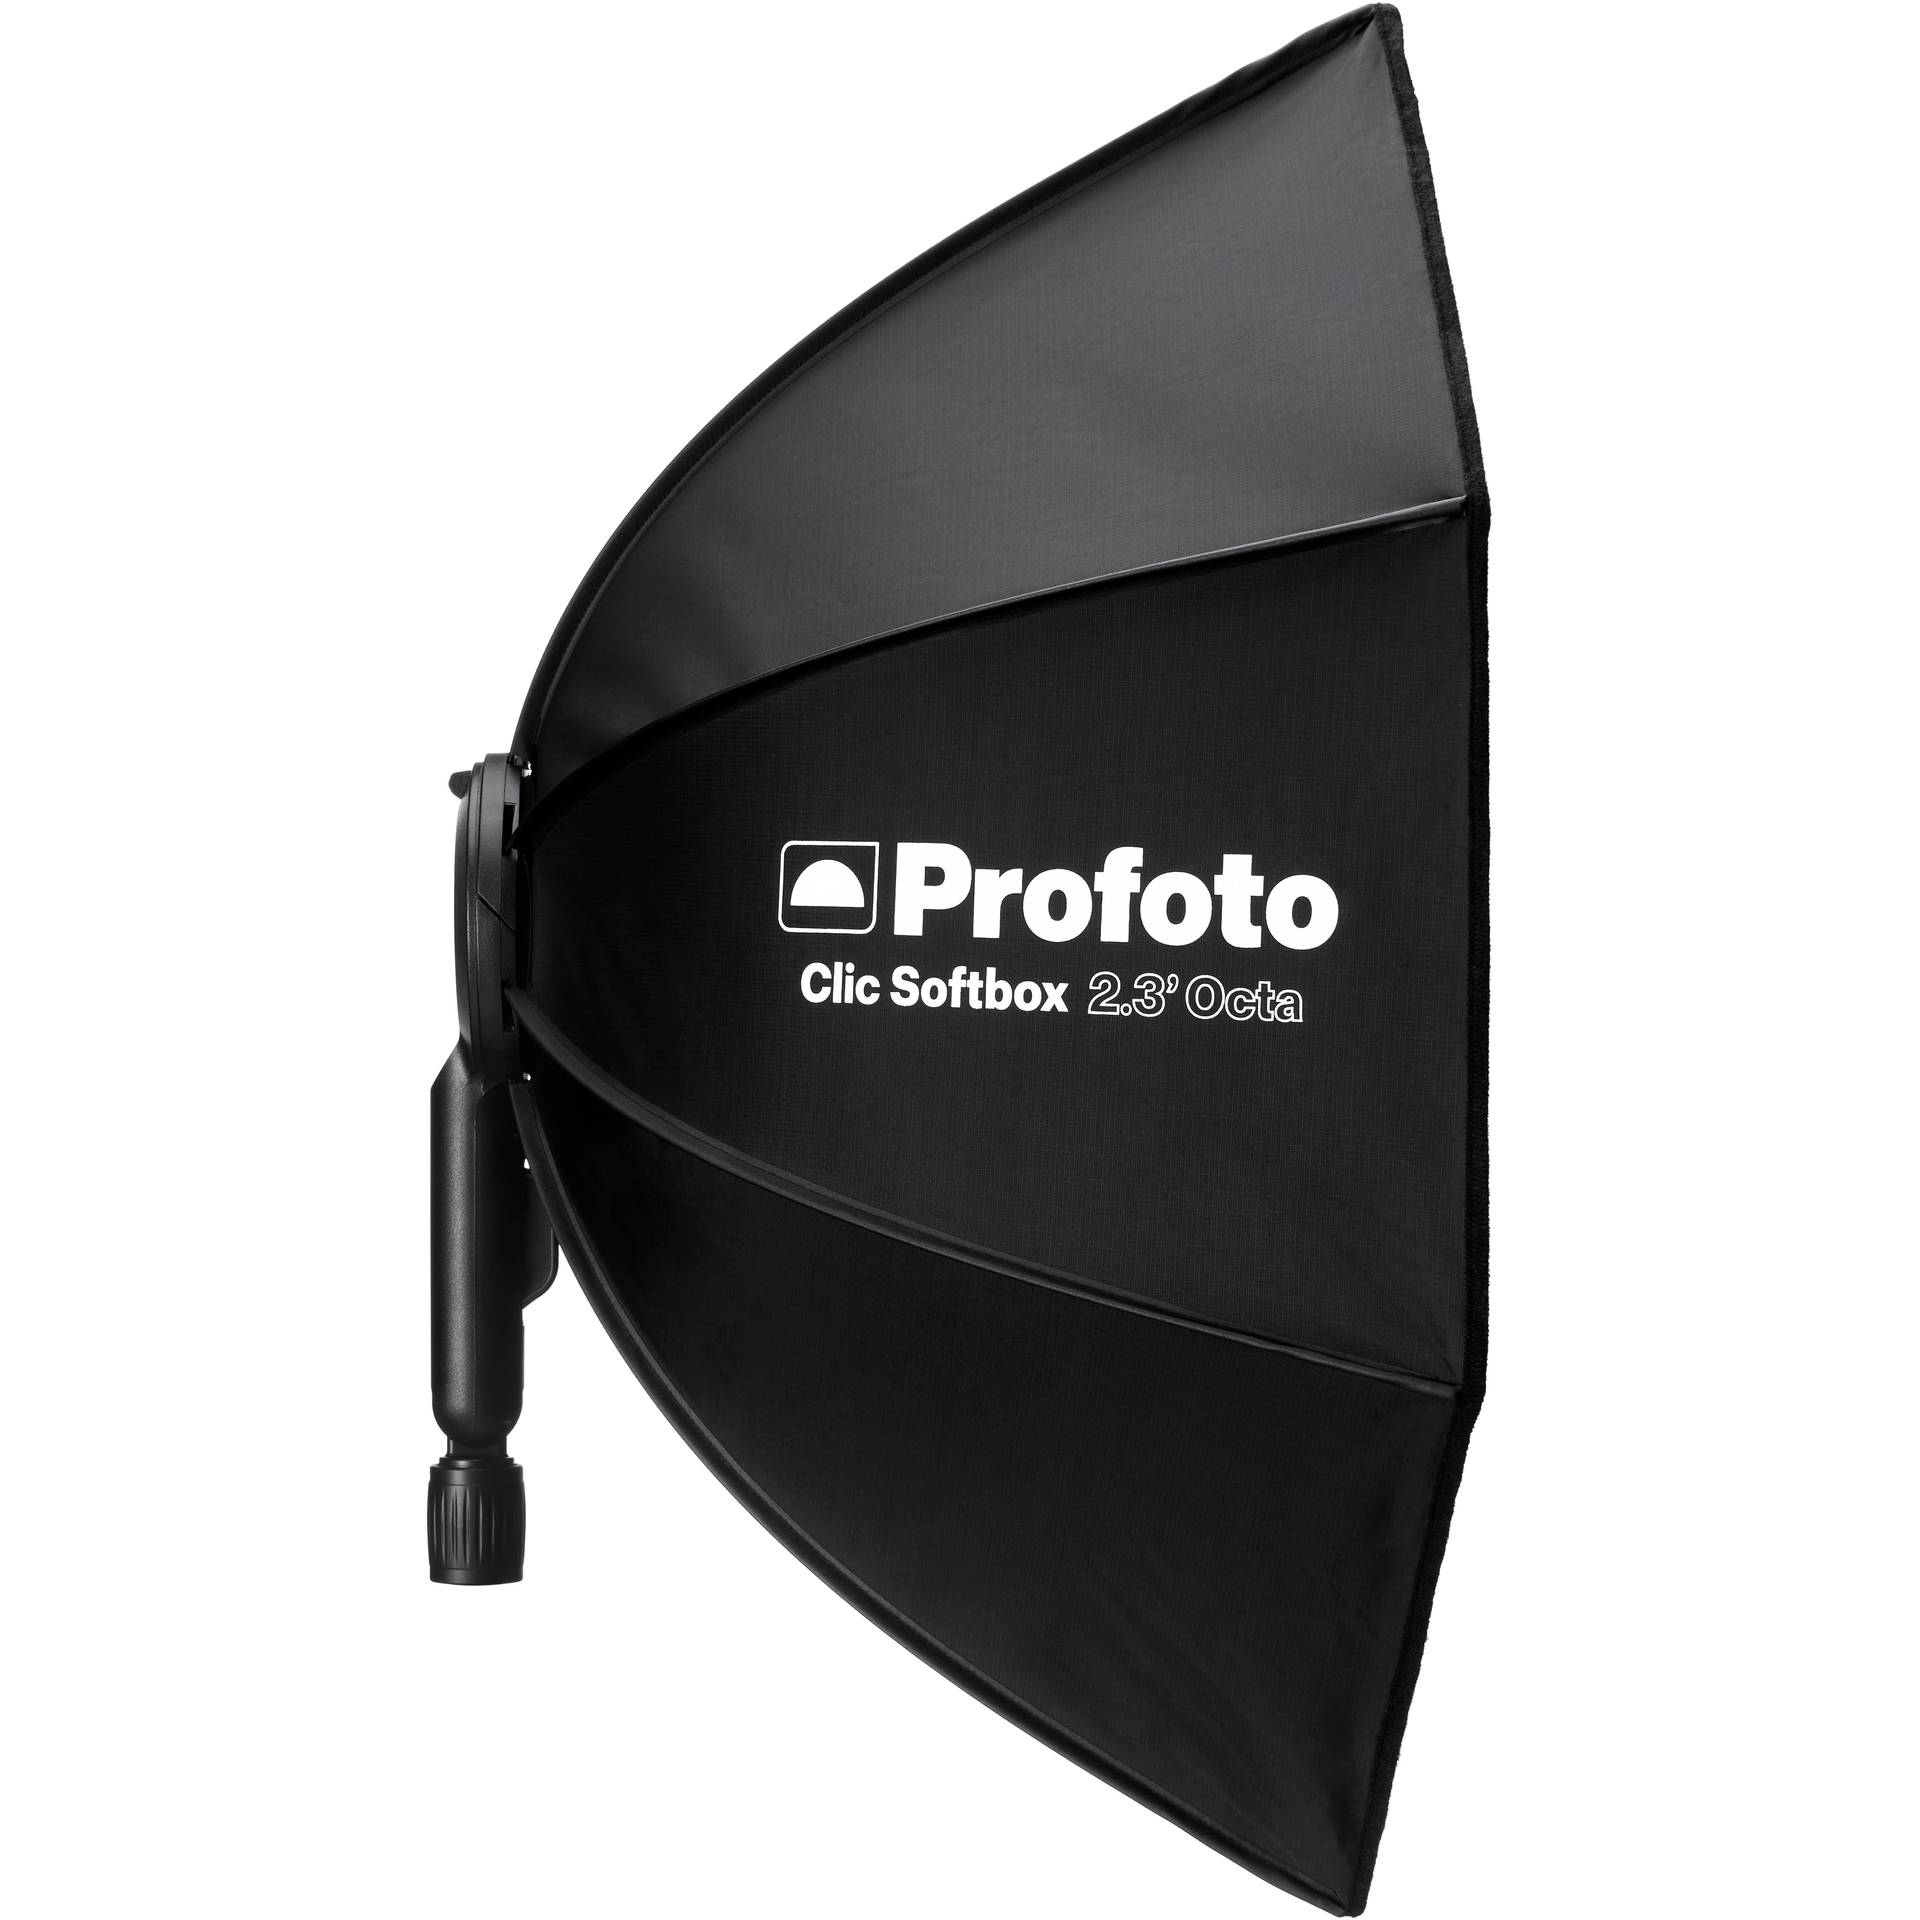 Profoto Clic Softbox Octa 2.3' (70cm)